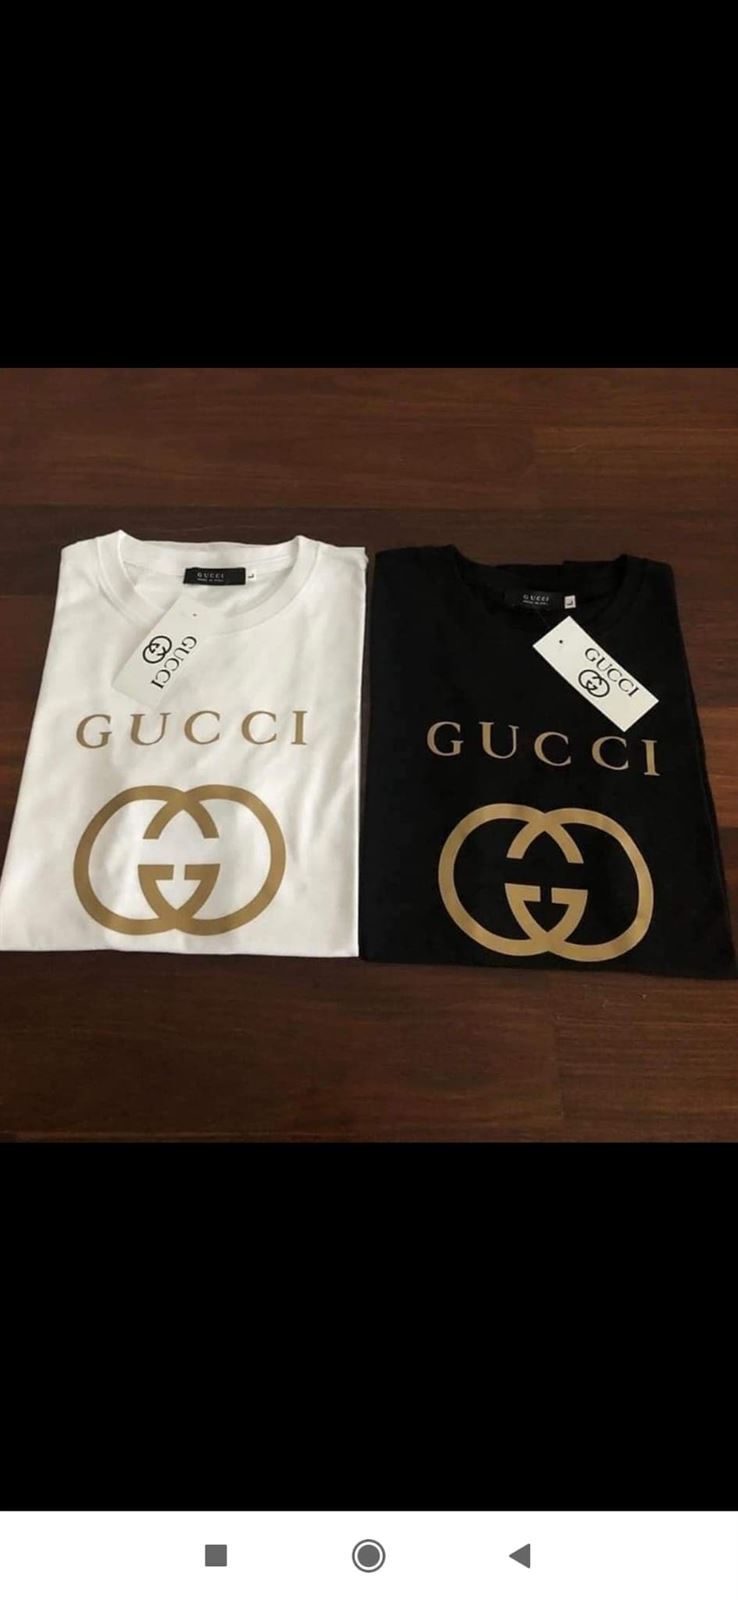 Camisetas Gucci hombre y mujer - Imagen 1